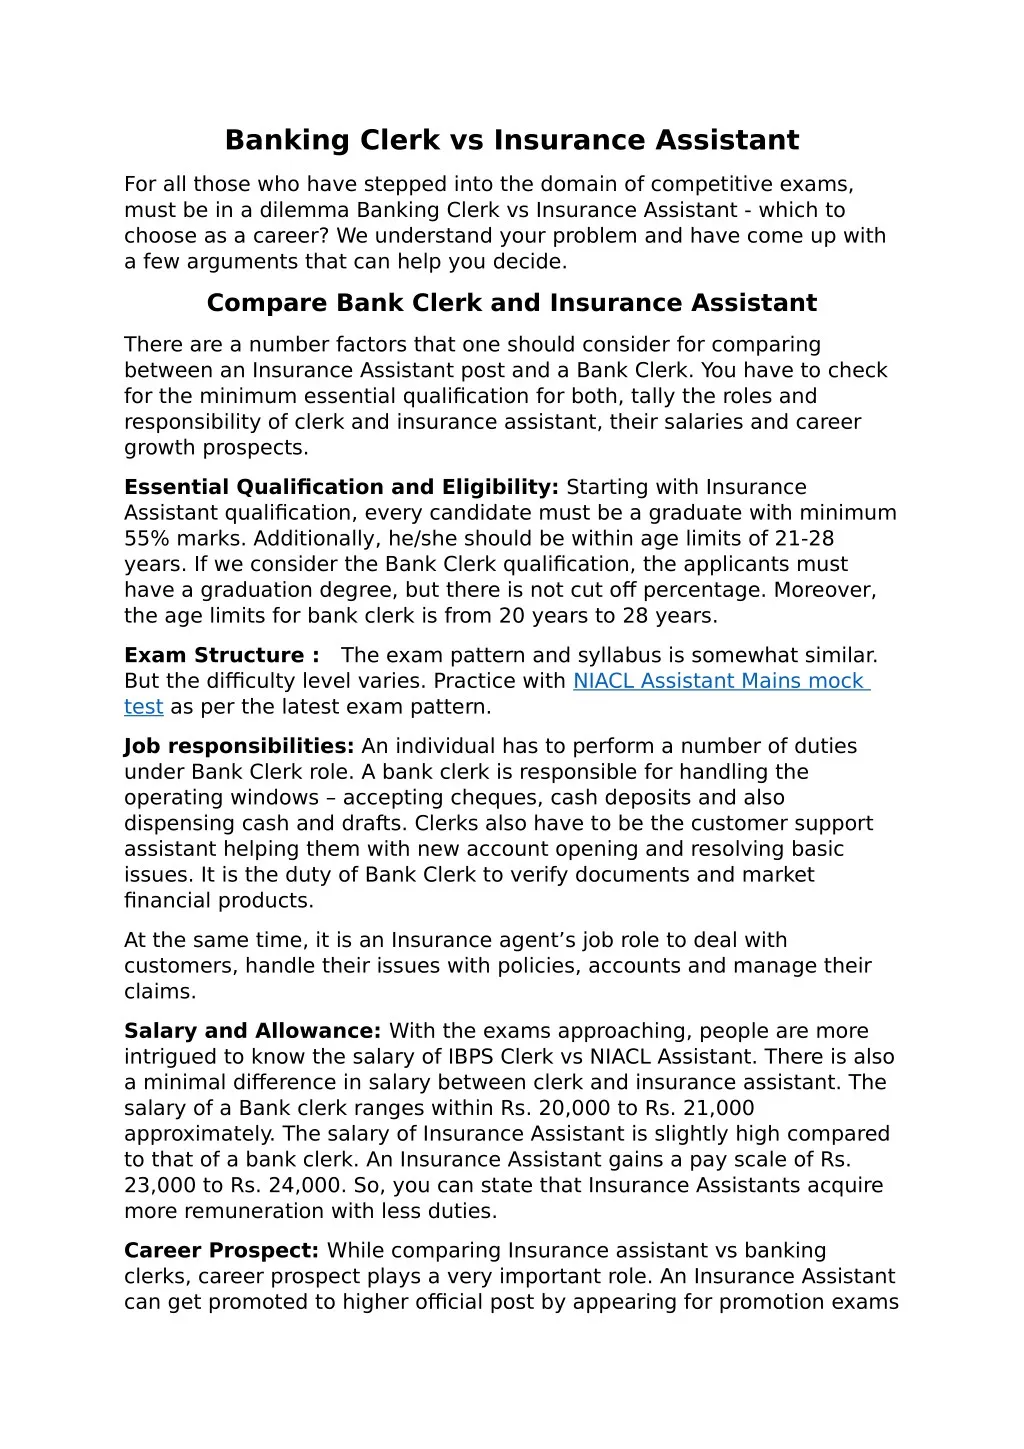 banking clerk vs insurance assistant